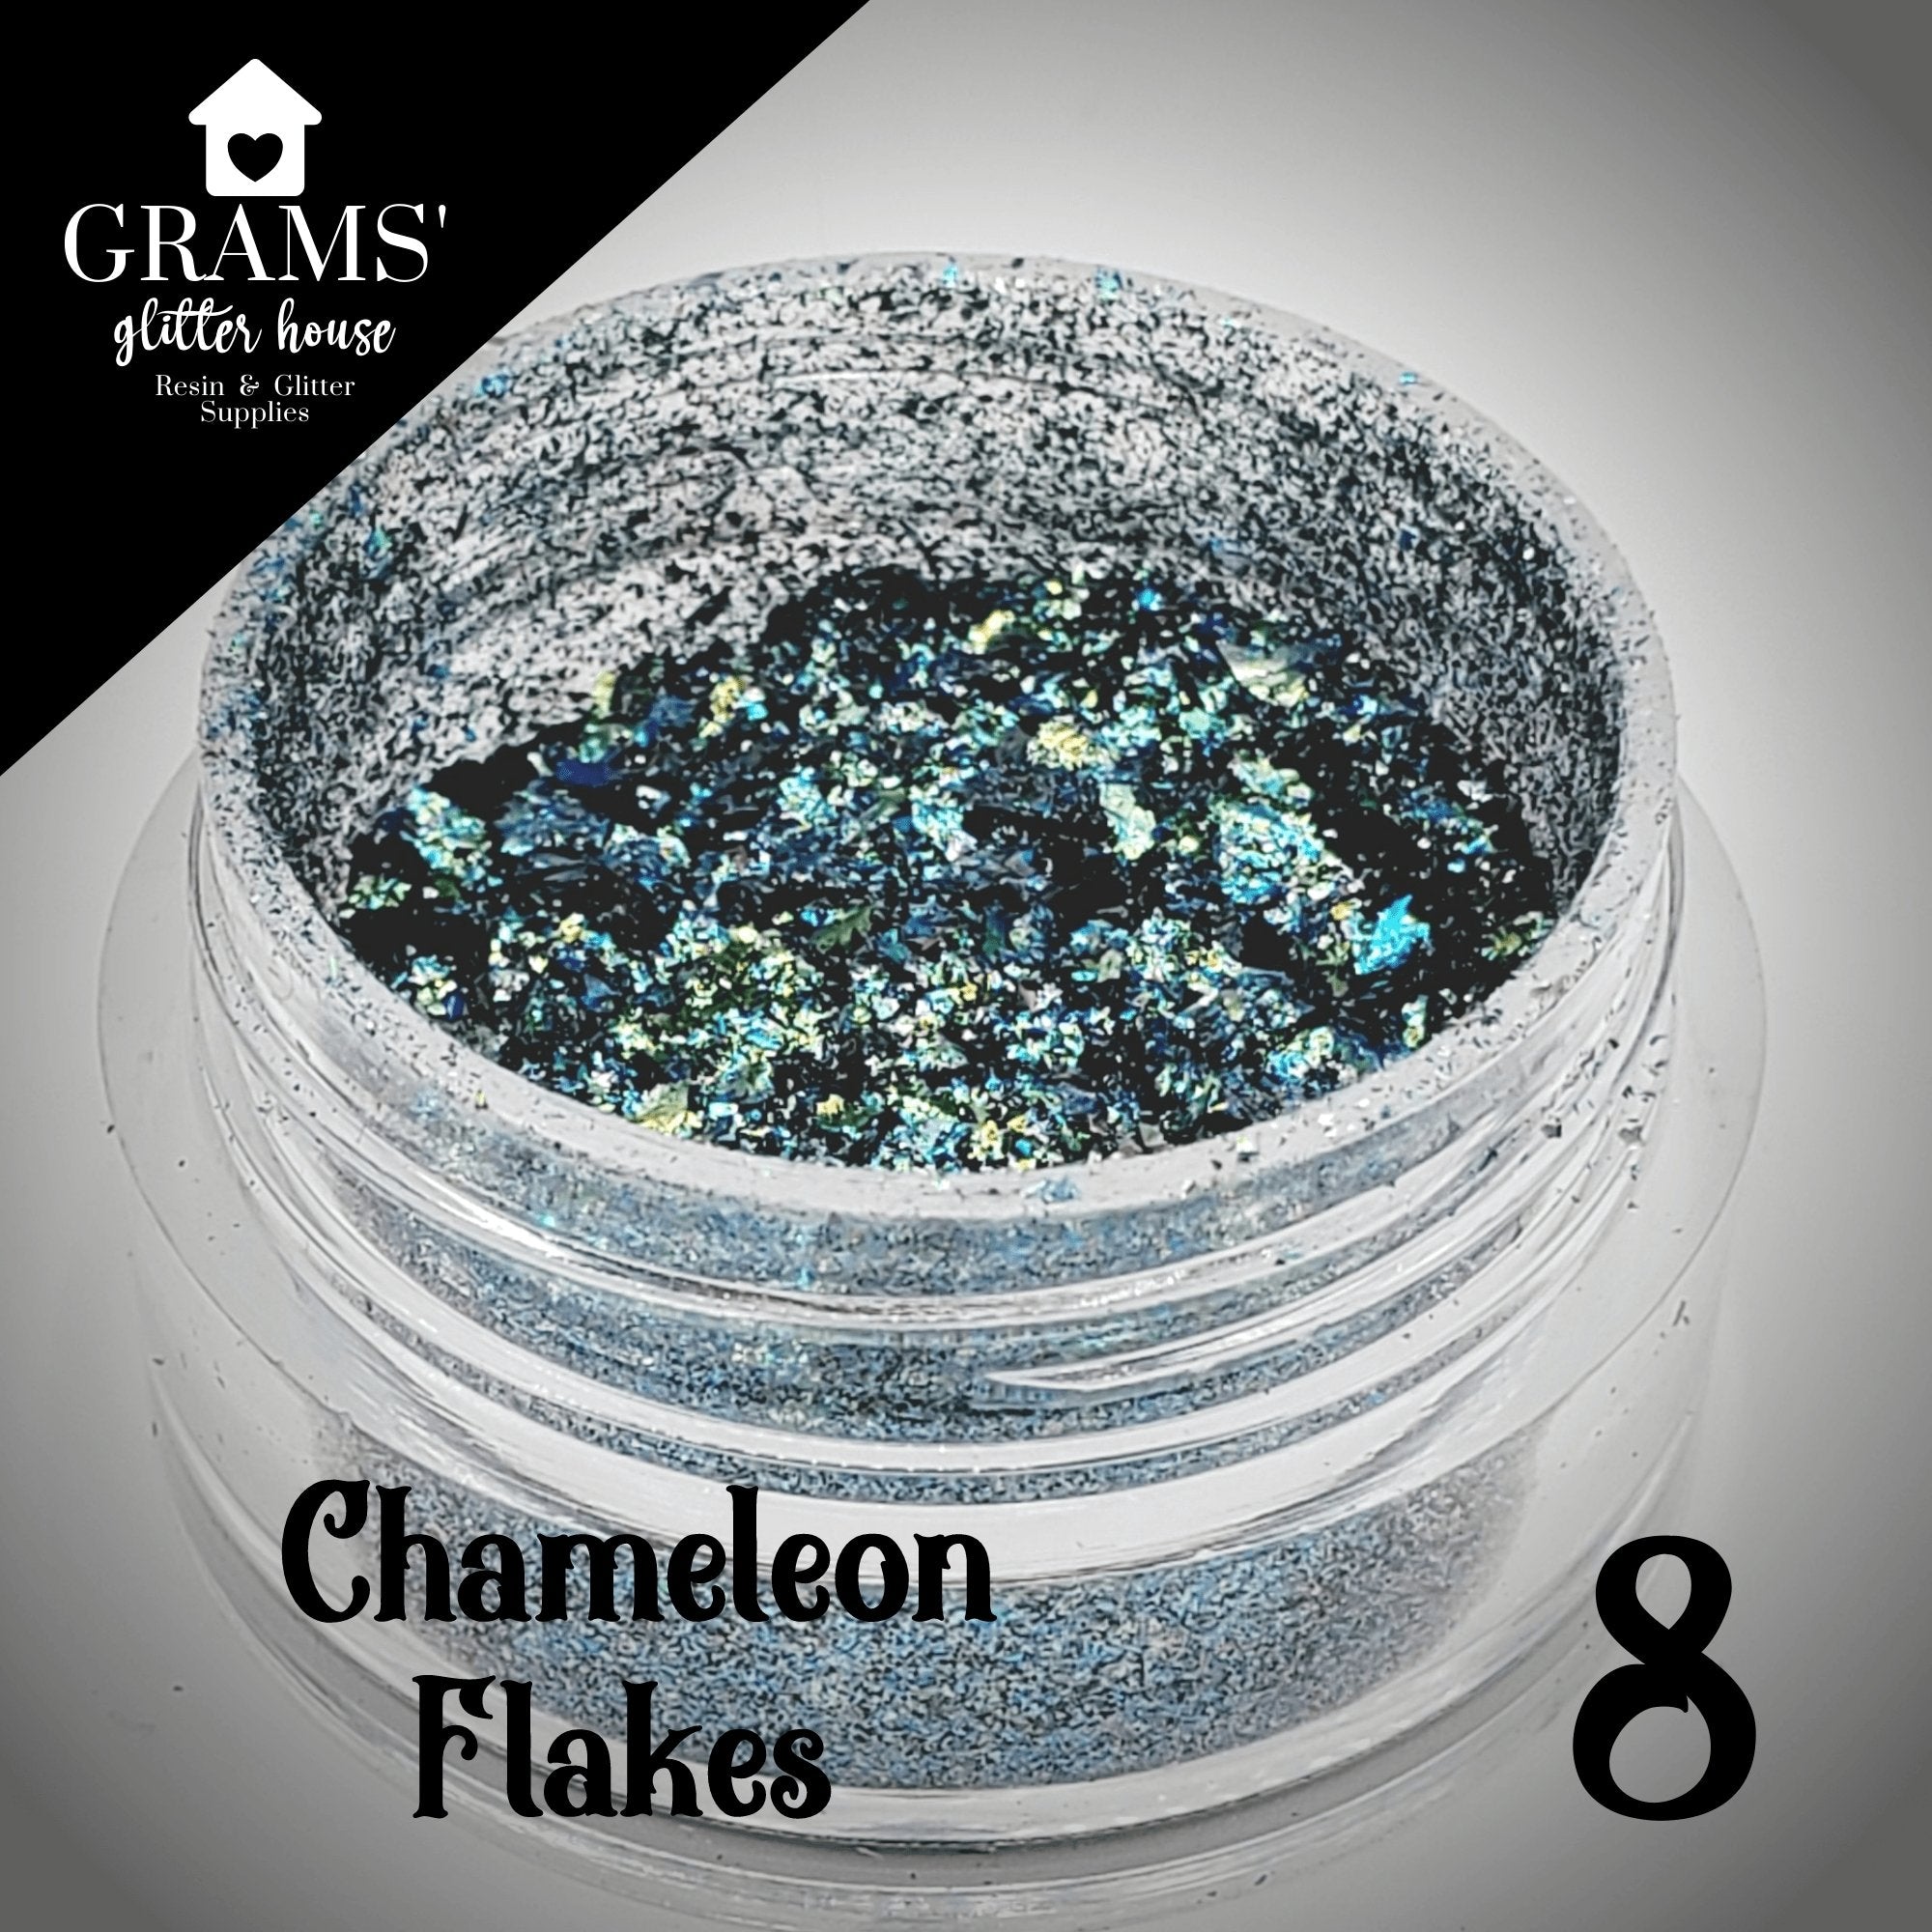 Grams' Glitter House Chameleon Flake 8 | Mold Flakes Chameleon Flakes